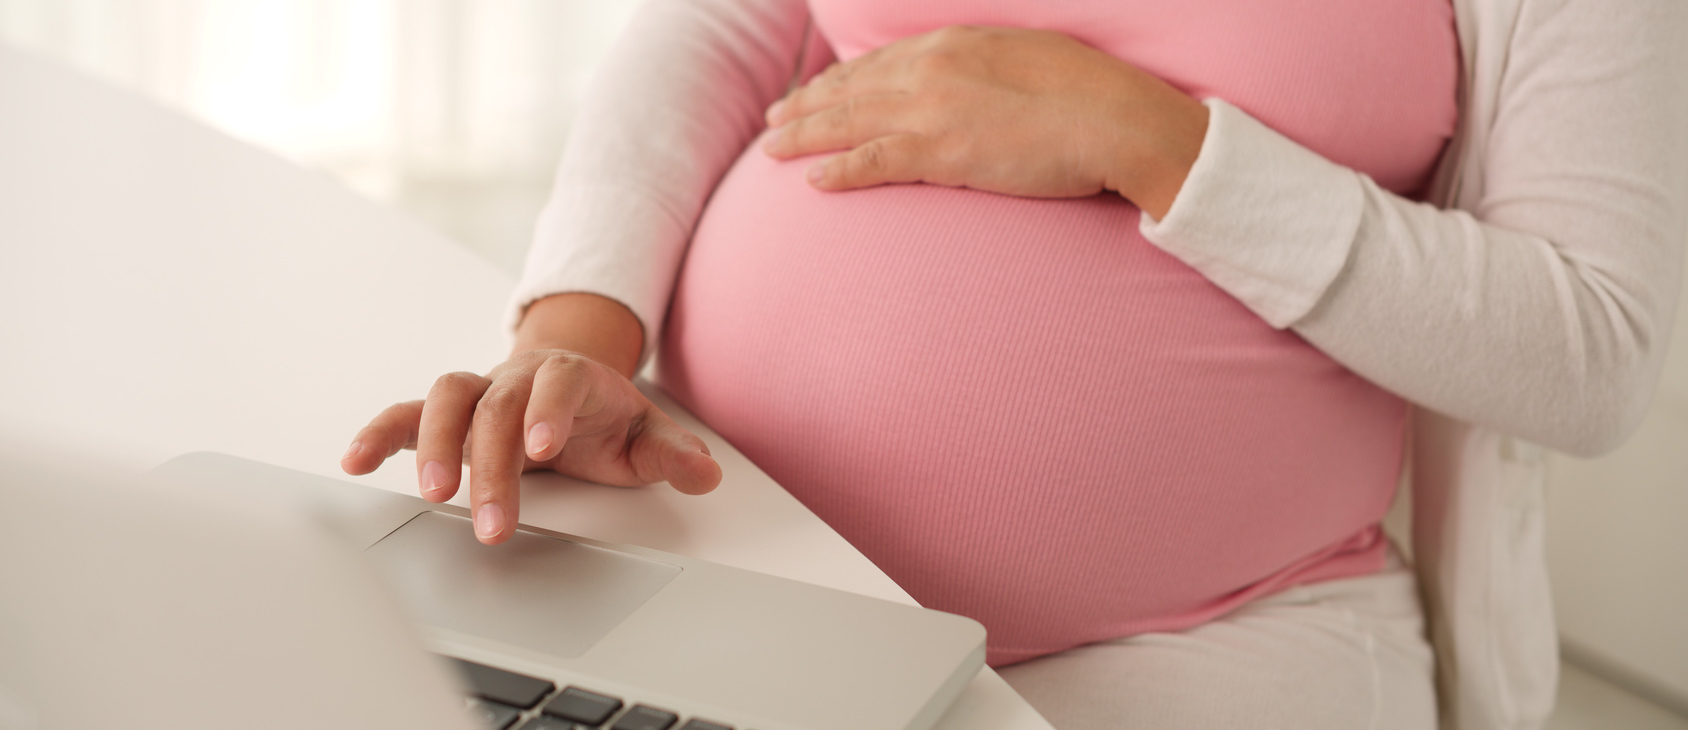 Focus on Pregnant and Postpartum Women